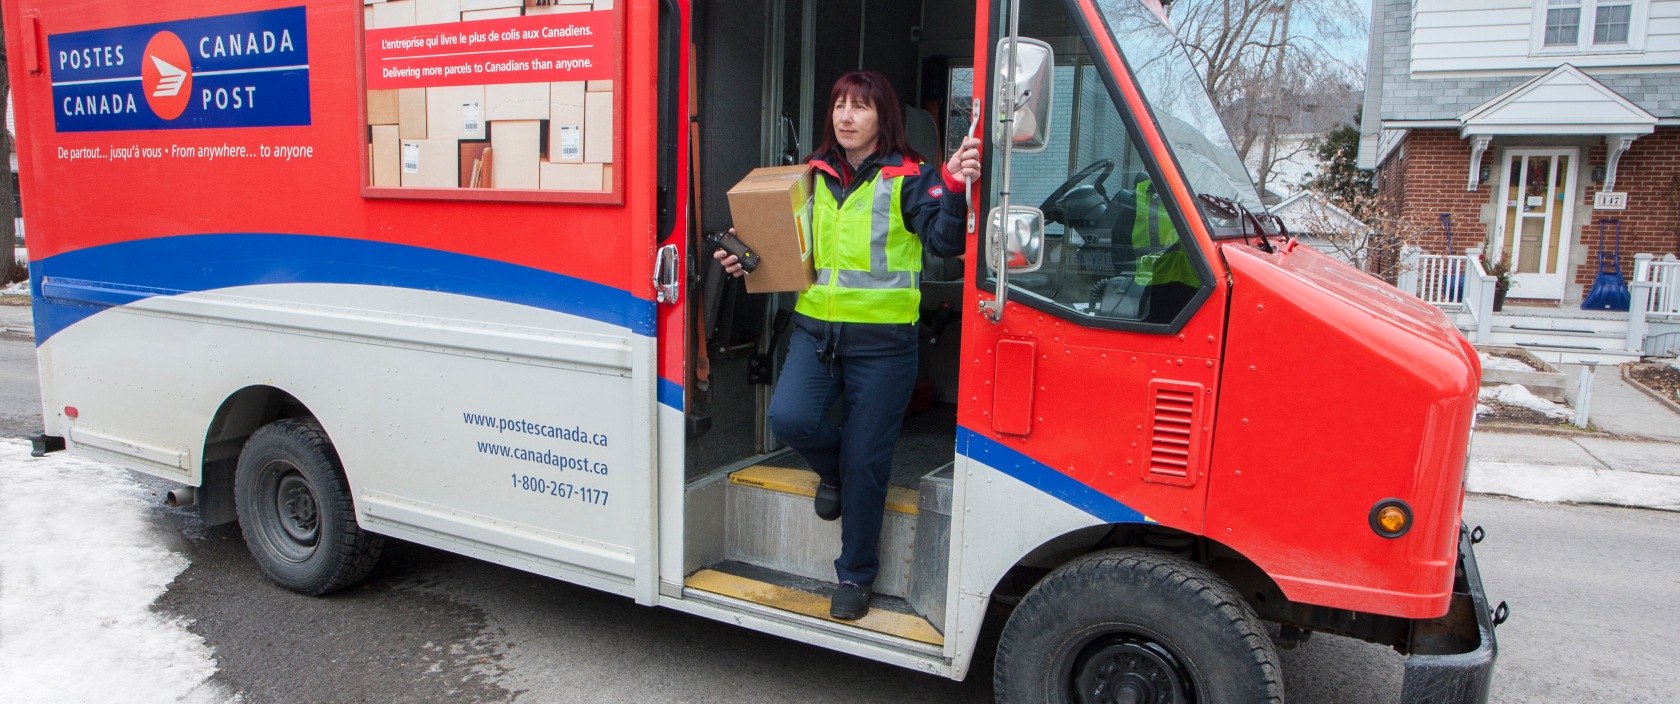 Agente de livraison sortant d’un camion de Postes Canada dans un quartier résidentiel pour livrer un colis